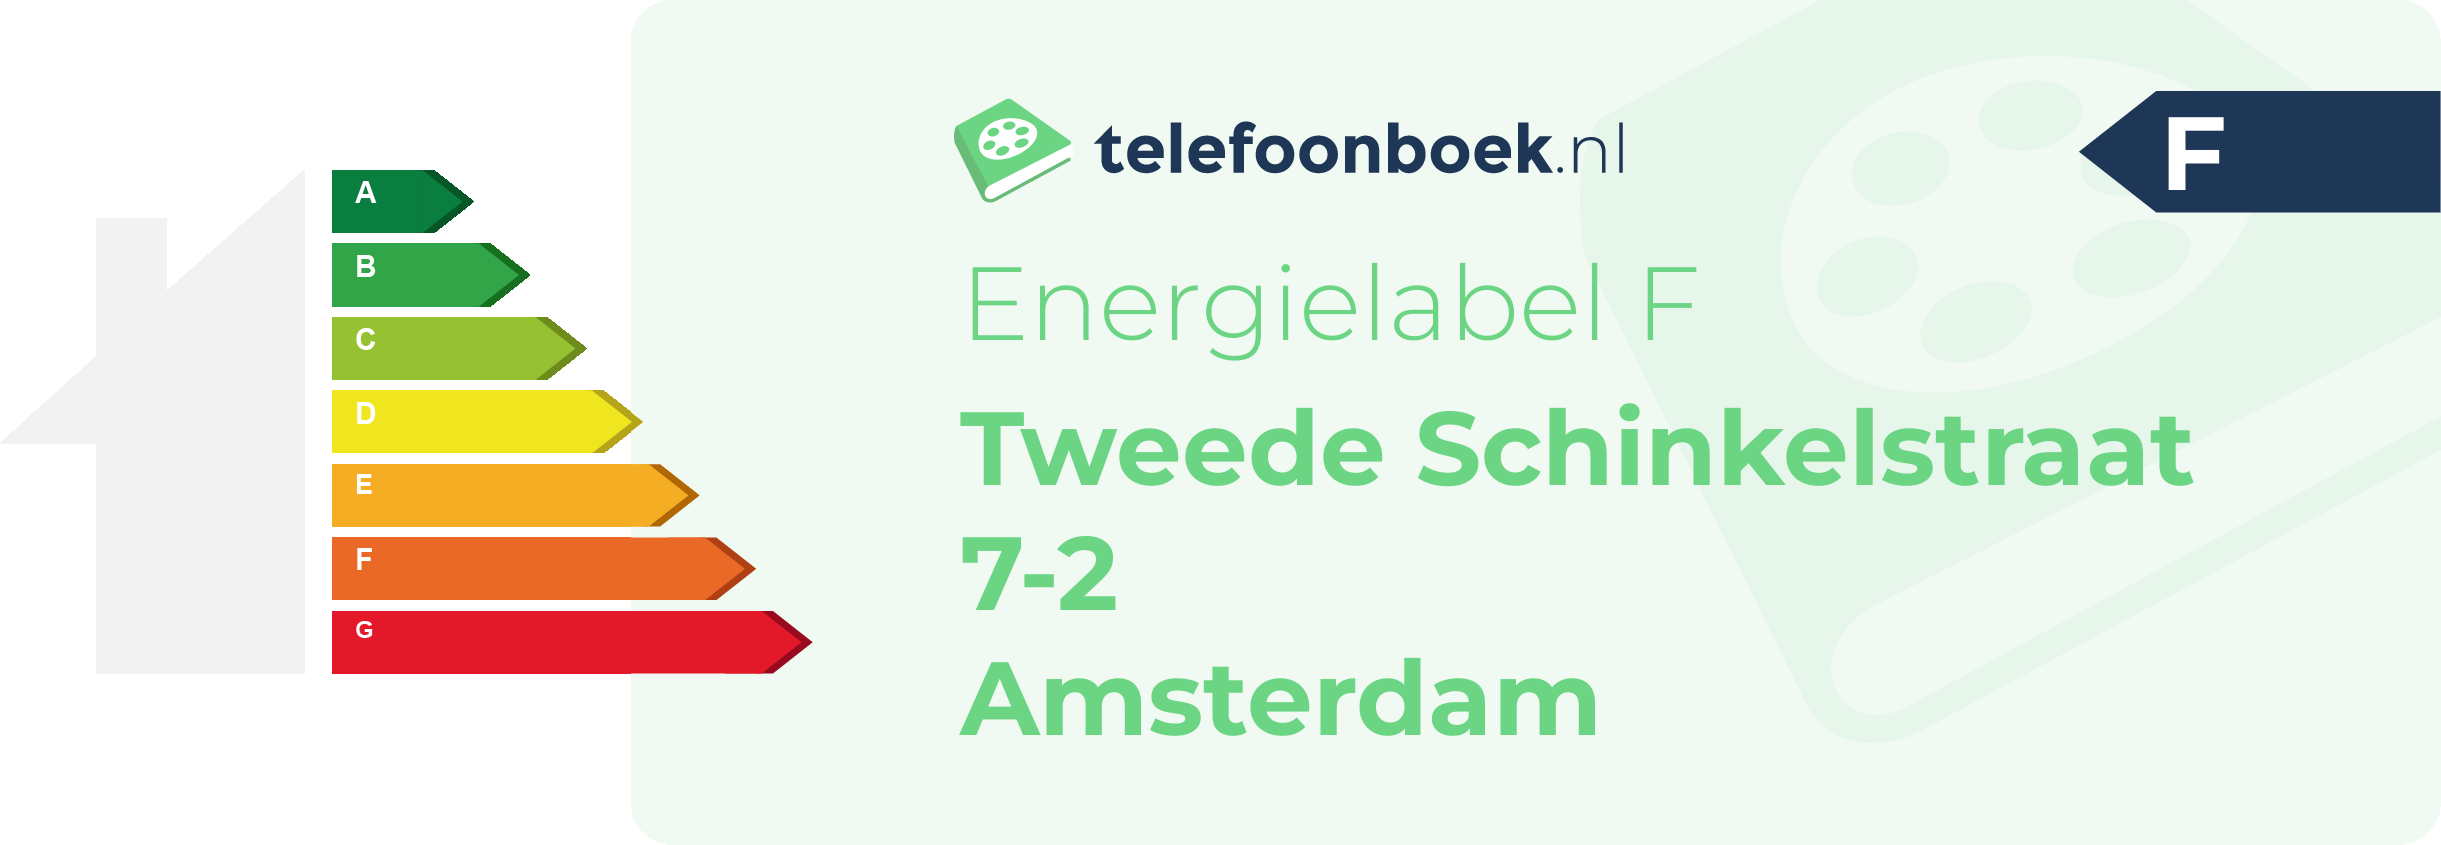 Energielabel Tweede Schinkelstraat 7-2 Amsterdam